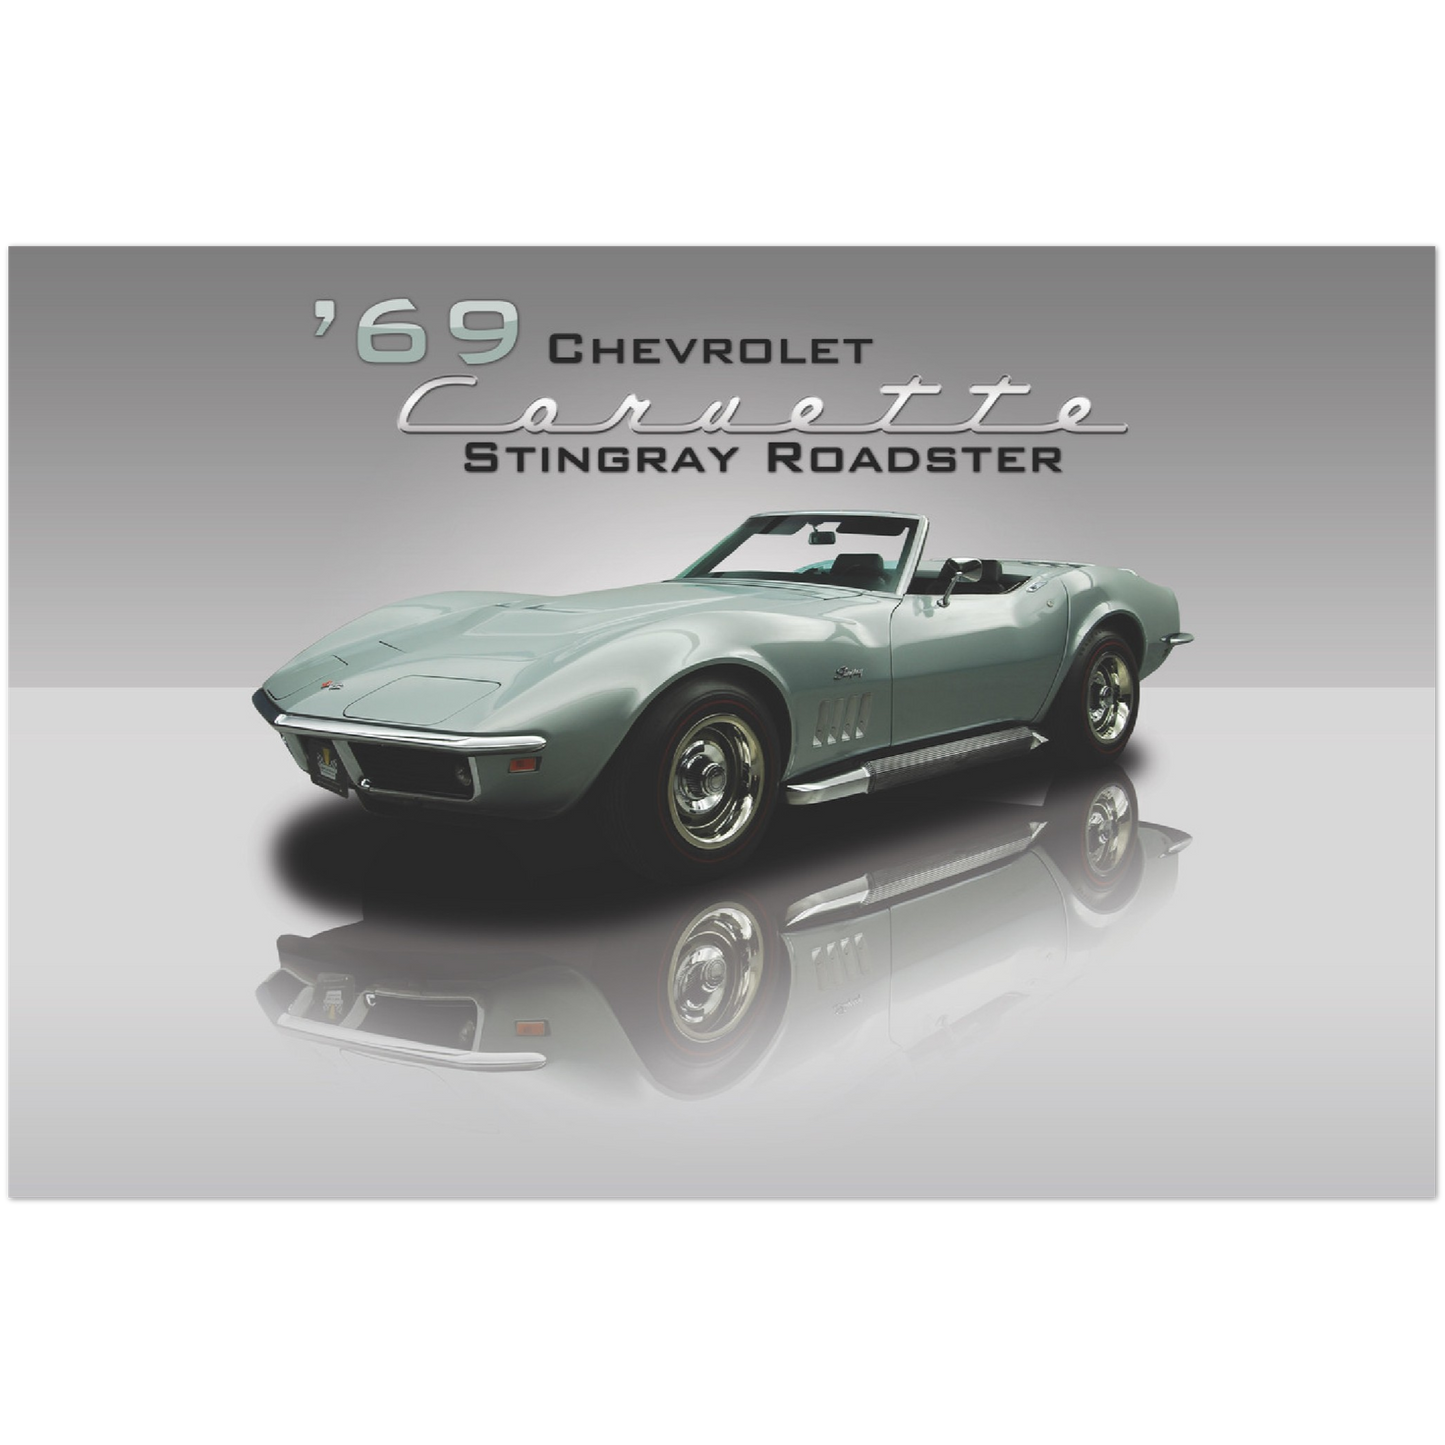 1969 Chevrolet Corvette Stingray Roadster